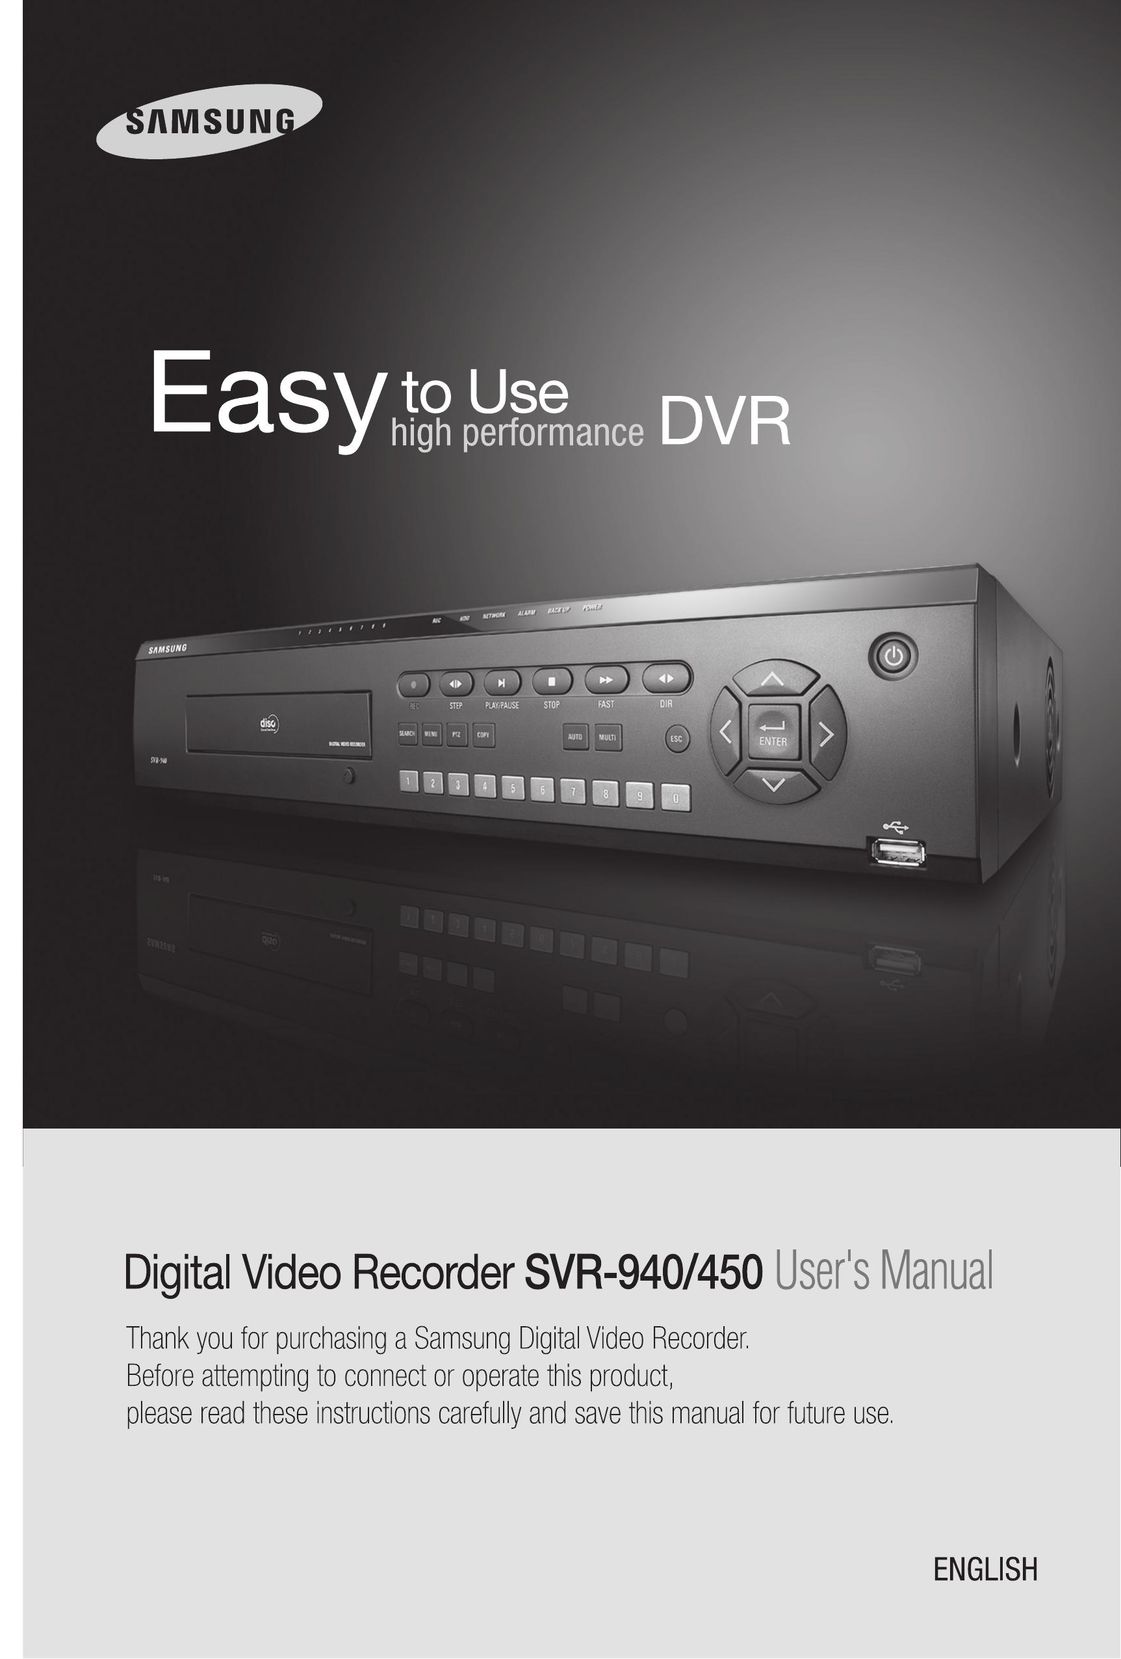 Samsung 450 DVR User Manual